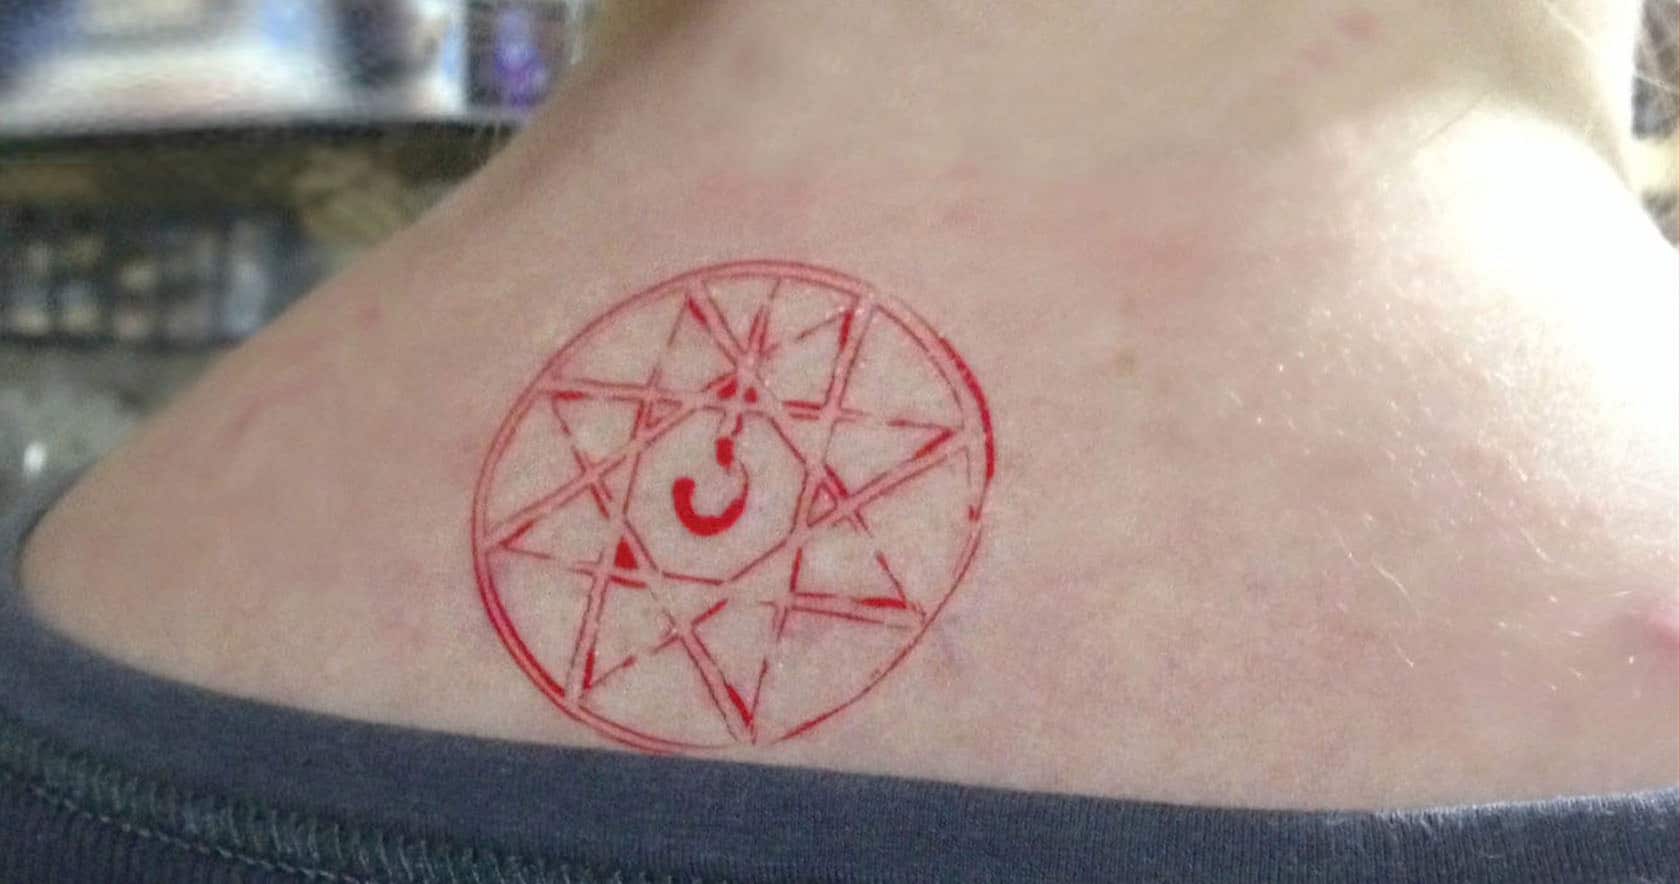 Fullmetal Alchemist Blood Seal Tattoo